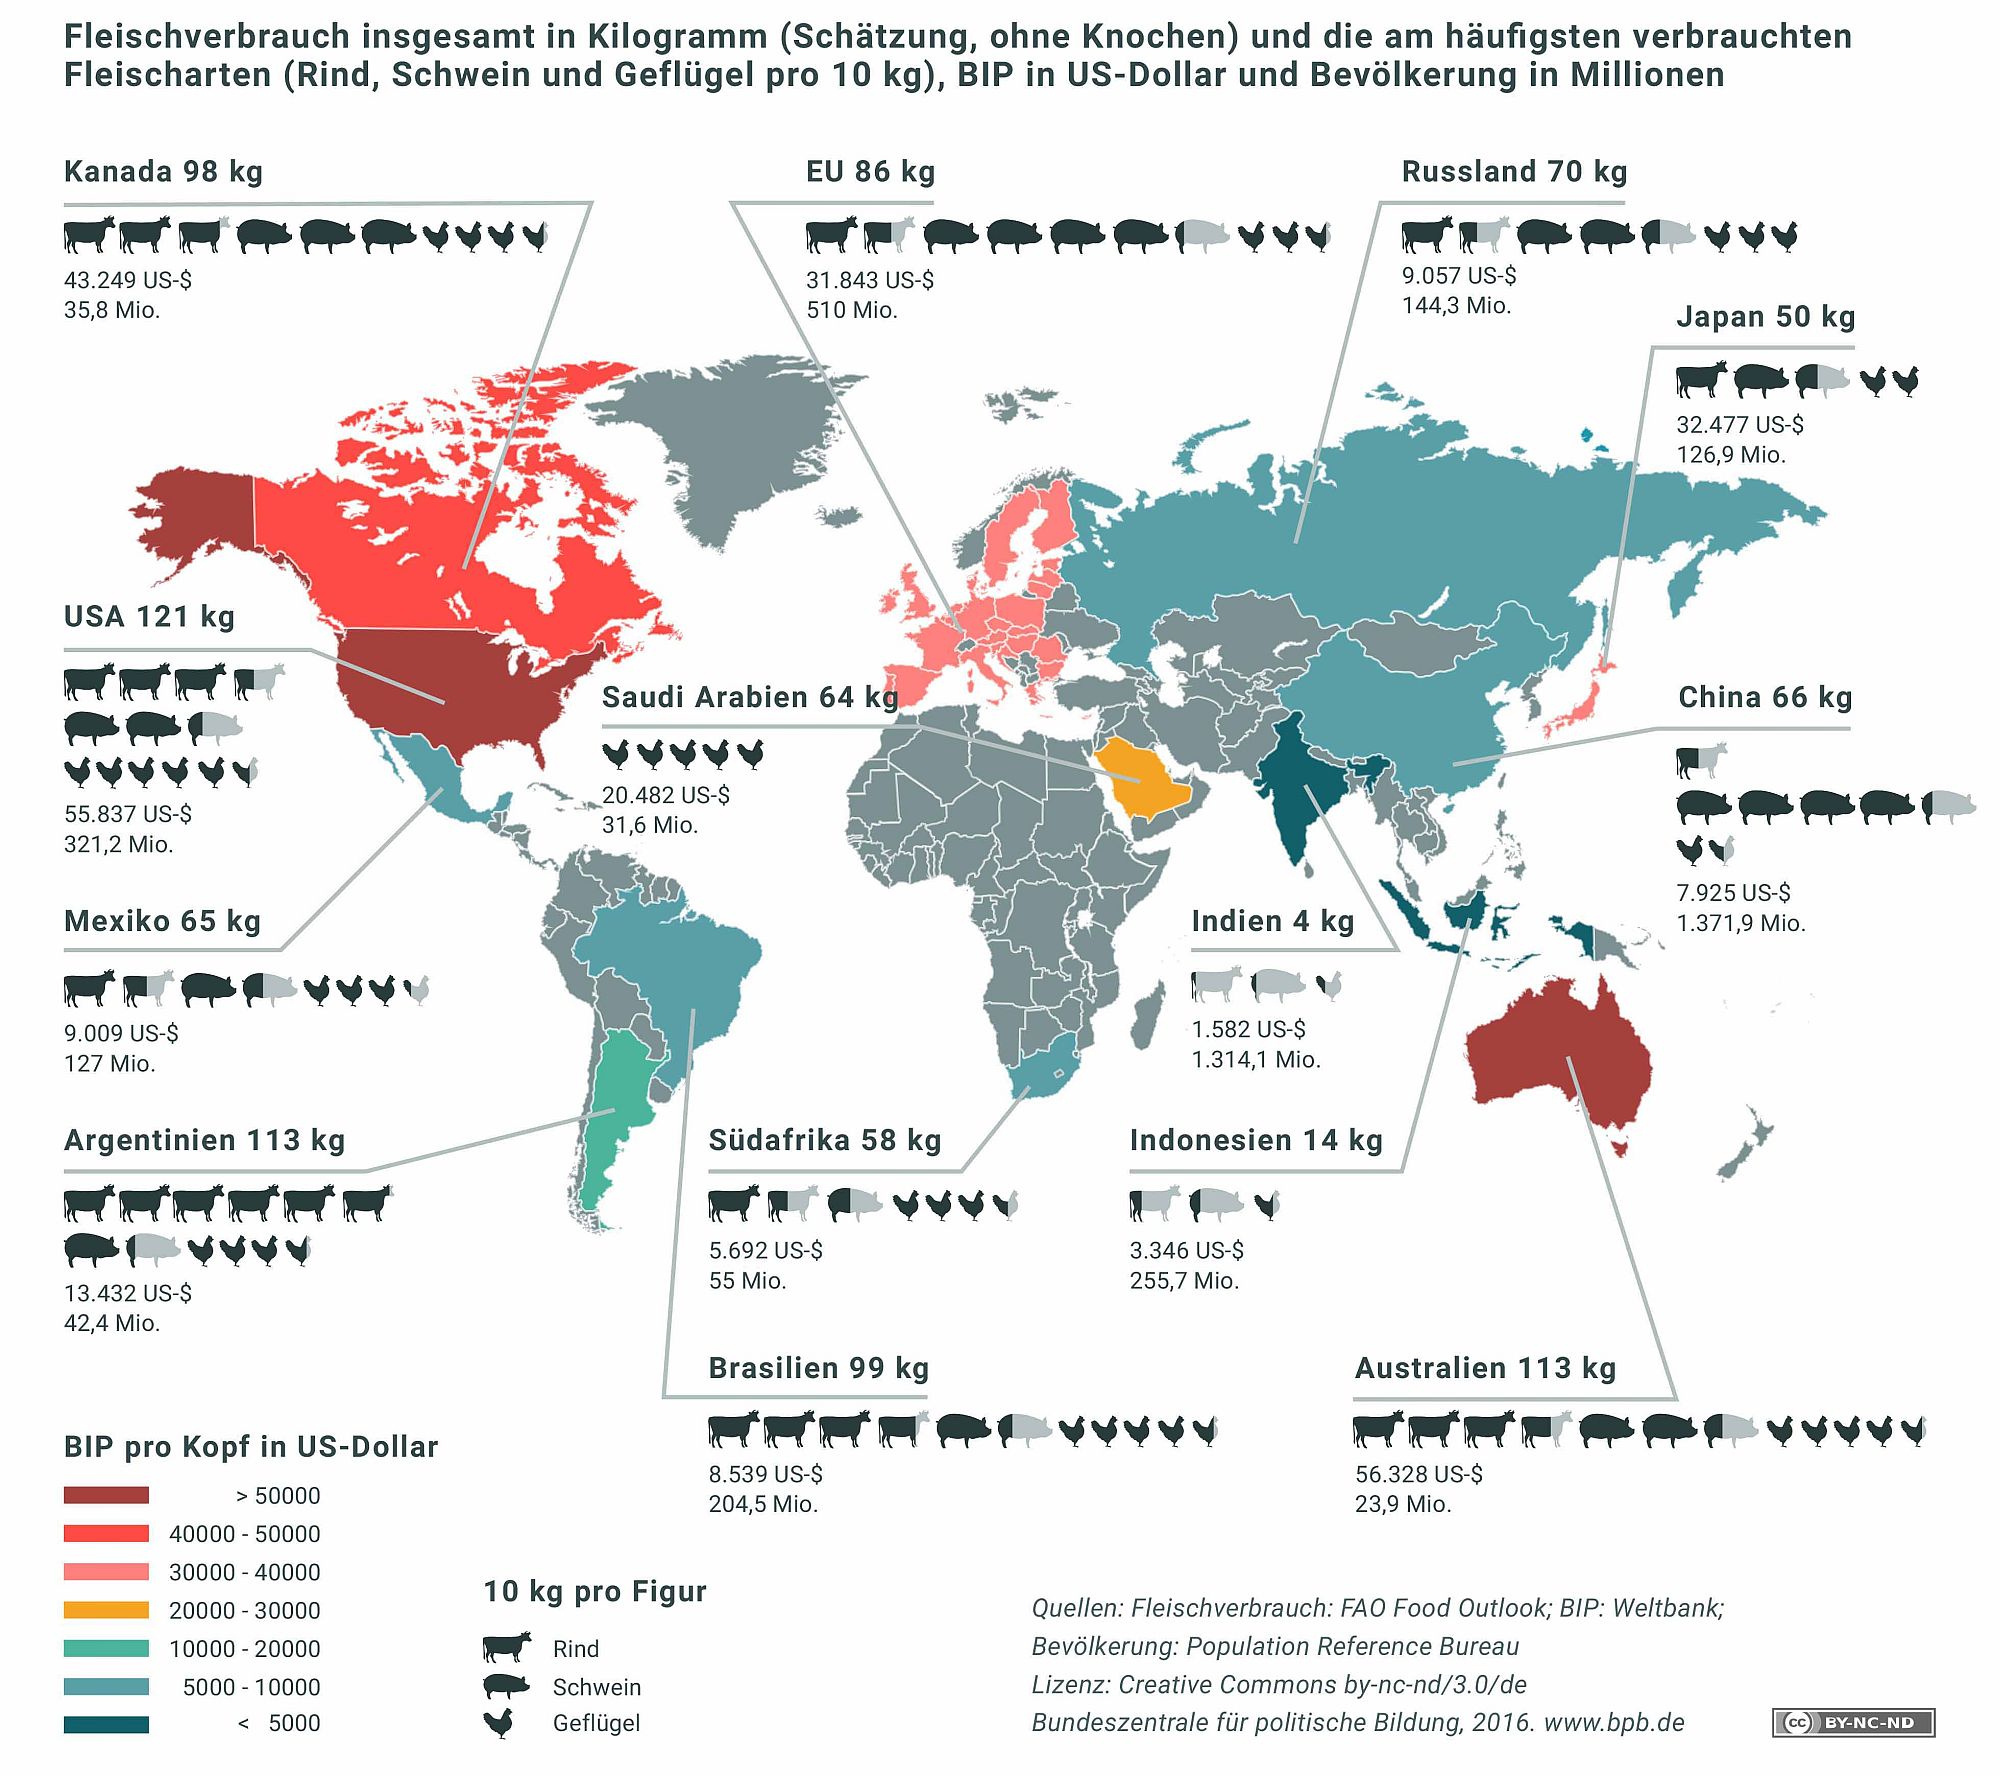 Pro-Kopf Fleischverbrauch, BIP Pro-Kopf und Bevölkerung in ausgewählten Ländern 2015